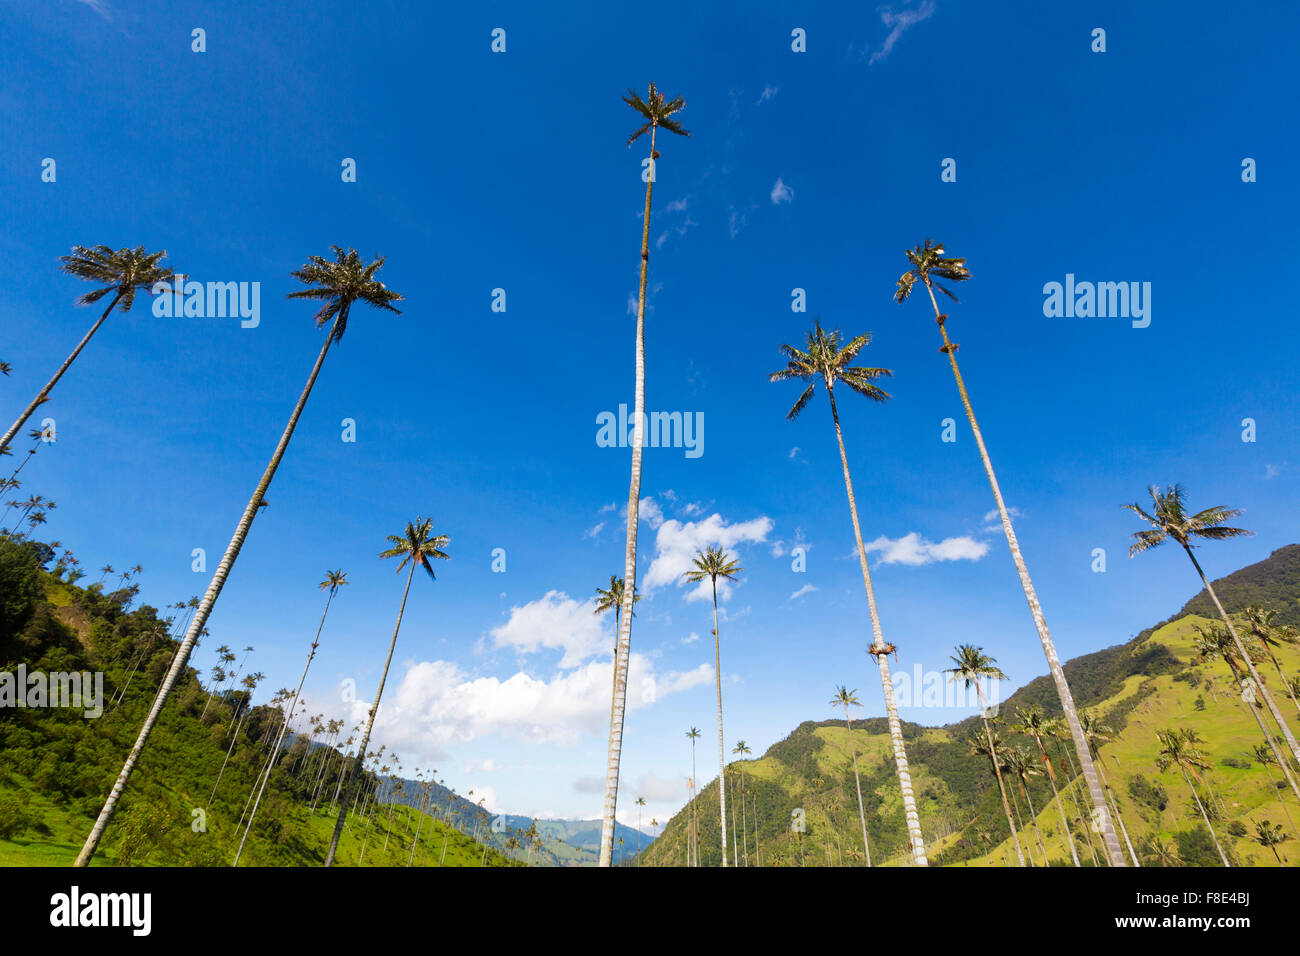 La vallée de Cocora près de Salento avec paysage enchanteur de pins et d'eucalyptus dominé par le fameux géant wax palms, claire b Banque D'Images